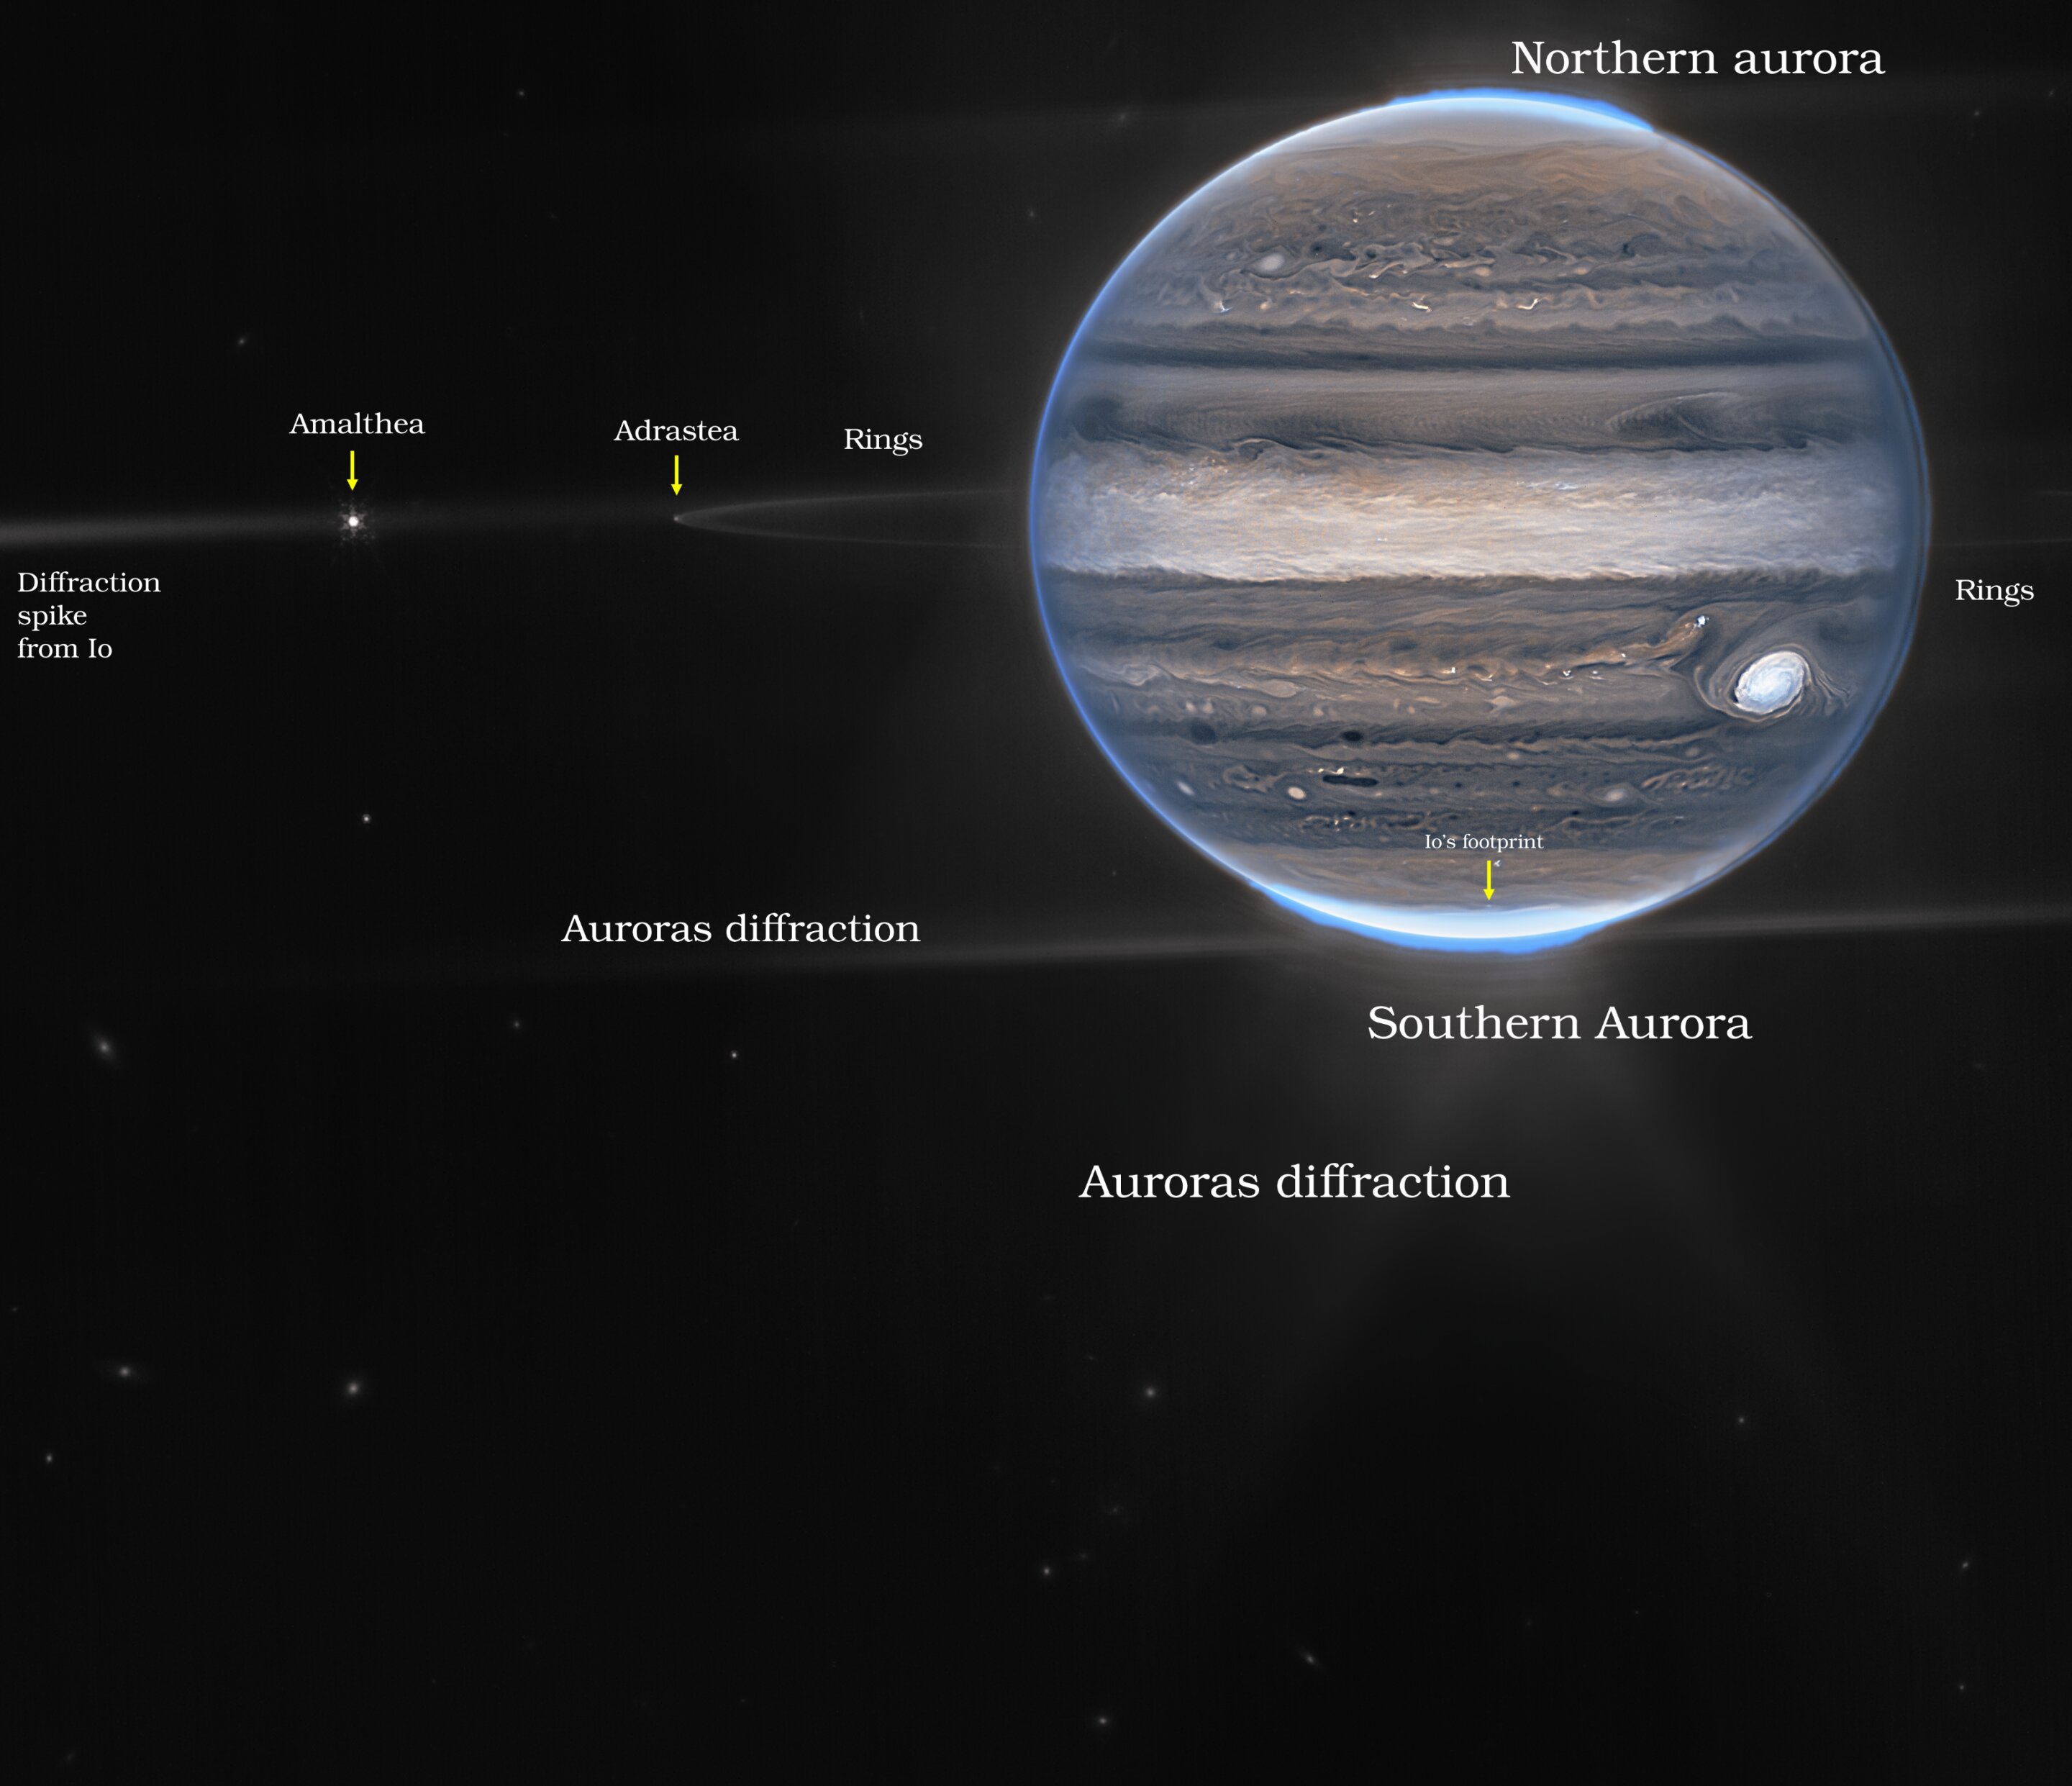 Ten kompozytowy obraz Jowisza w sztucznych kolorach został uzyskany przy użyciu instrumentu NIRCam. W tym trybie obrazowania zastosowano inne czasy ekspozycji i tylko dwa filtry schematu barwnego instrumentu, odwzorowane w kolorach pomarańczowym i cyjanowym. Obraz przedstawia pierścienie Jowisza i niektóre z jego małych satelitów wraz z dalekimi galaktykami tła. Amalthea (o rozmiarach ~250 x 150 km średnicy) i maleńka Adrastea (~20 km średnicy) są tu dobrze widoczne. Wzór dyfrakcyjny utworzony przez jasne zorze i księżyc Io (tuż po lewej stronie, niewidoczny na zdjęciu) składa się na złożone tło rozproszonego światła wokół Jowisza. Źródło: NASA, ESA, zespół Jupiter Early Release Science. Obróbka zdjęć: Ricardo Hueso [UPV/EHU] i Judy Schmidt